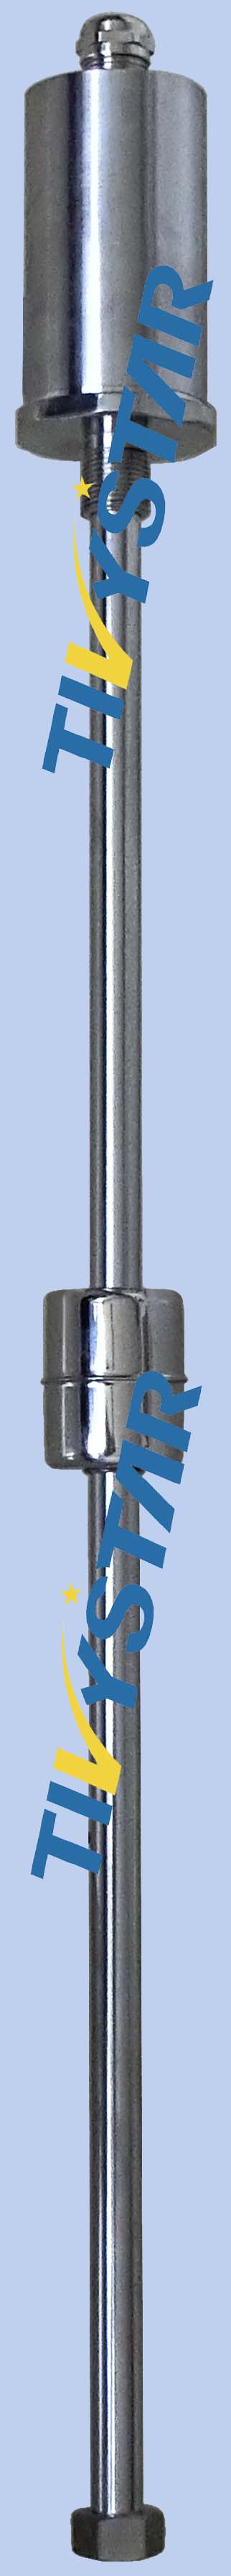 优质磁致伸缩液位传感器生产商-优质磁致伸缩液位传感器销售